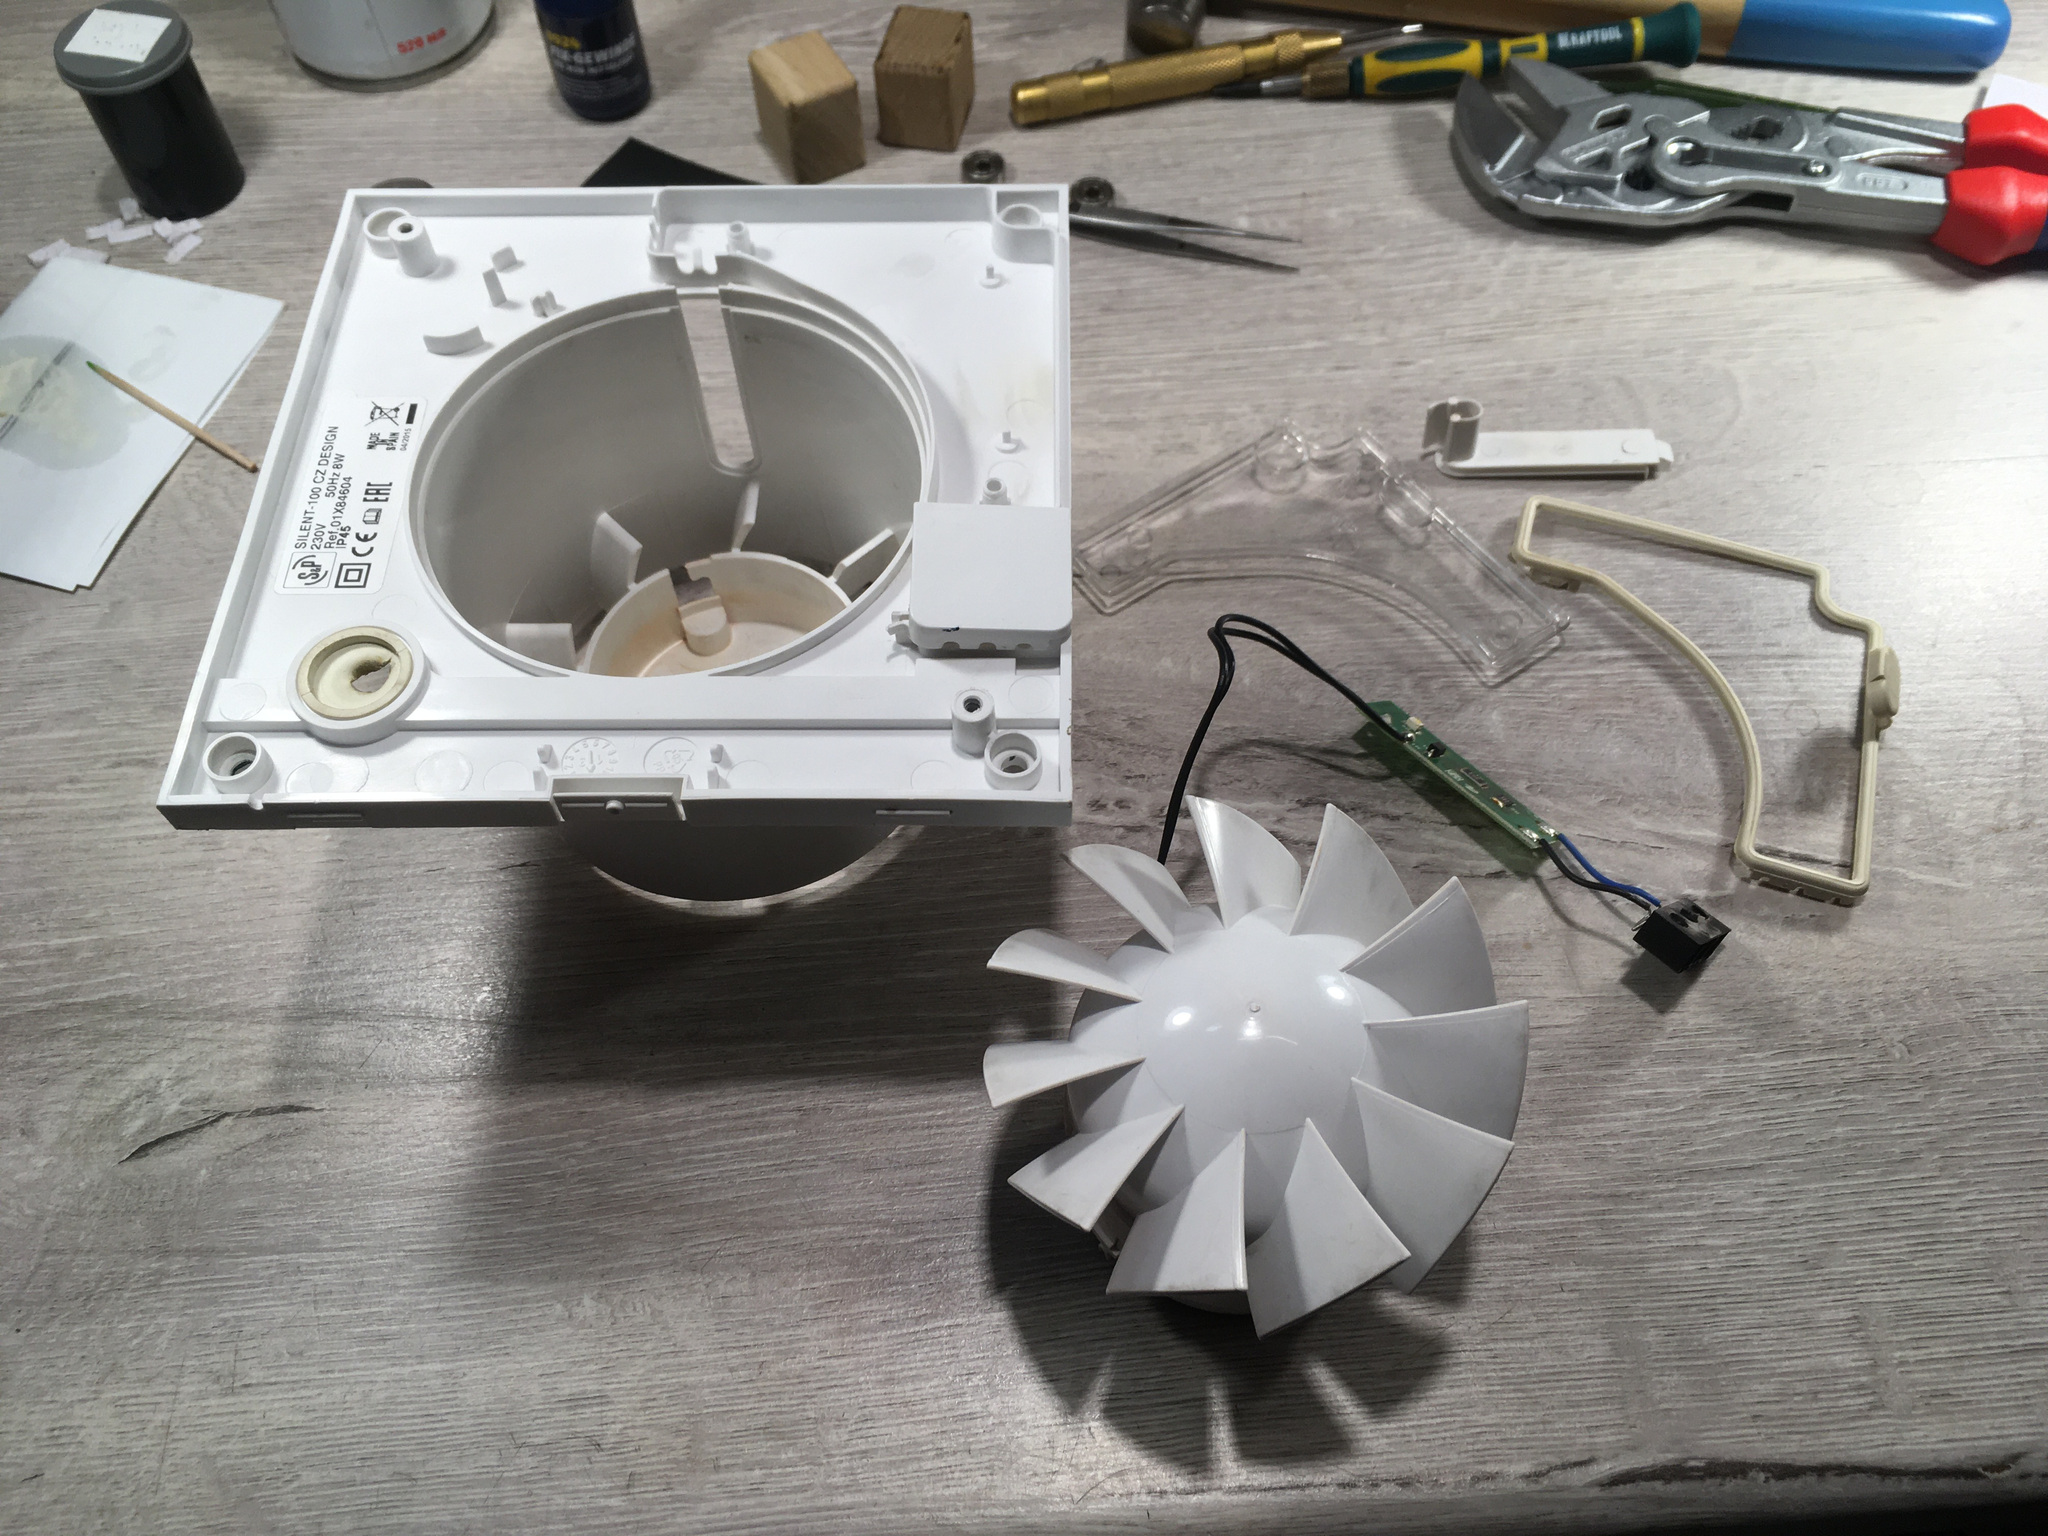 Ремонт компьютерного вентилятора своими руками. Подробное и качественное видео